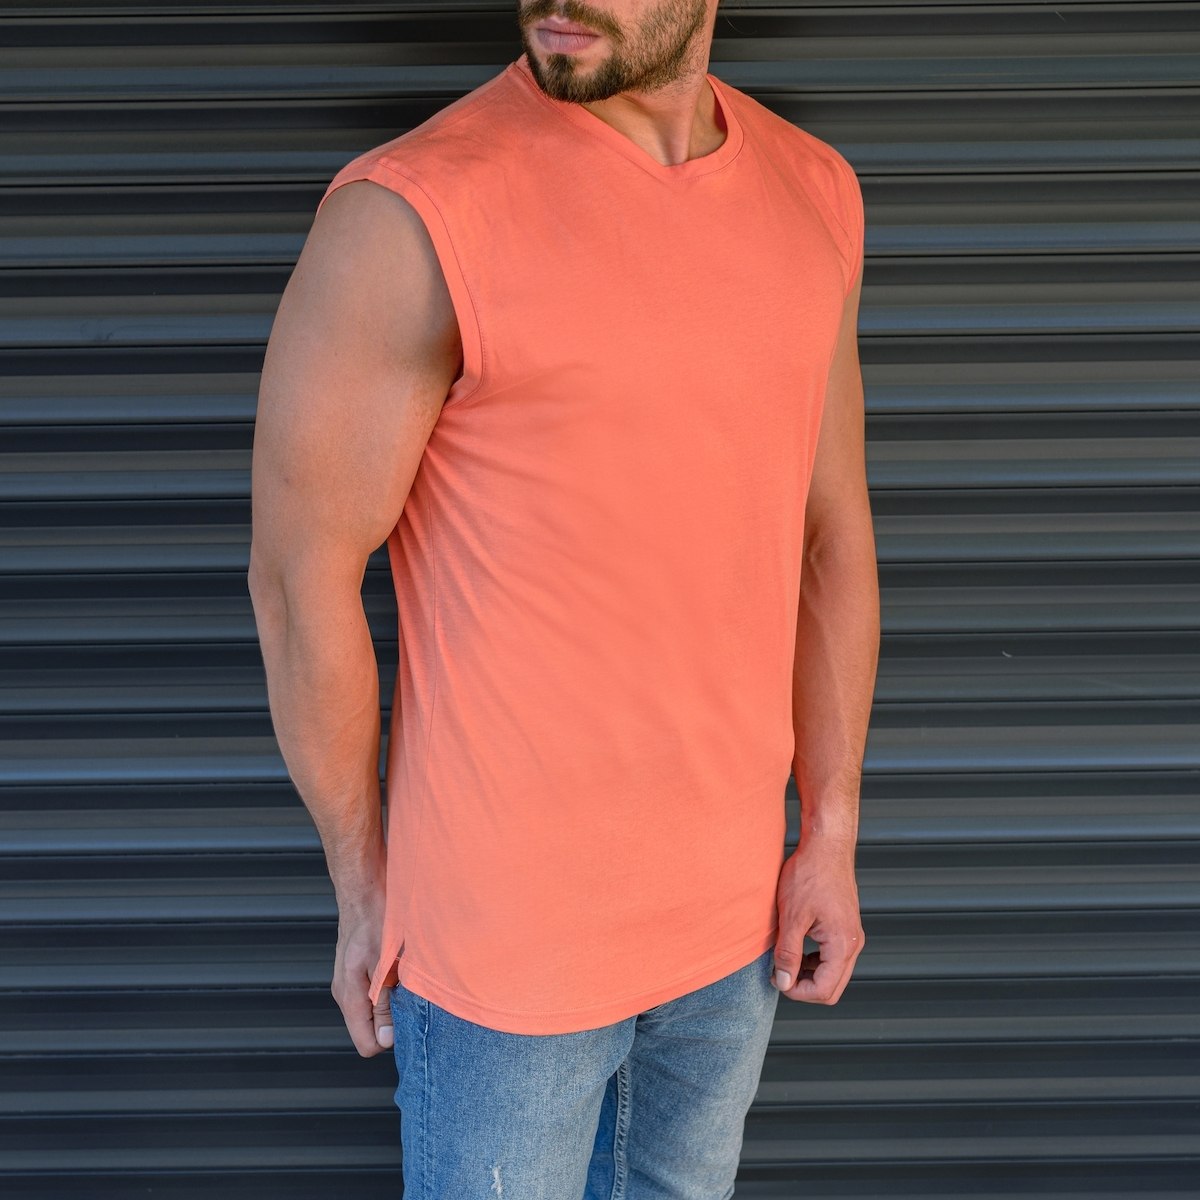 Men's Basic Sleeveless T-Shirt In Salmon - 2